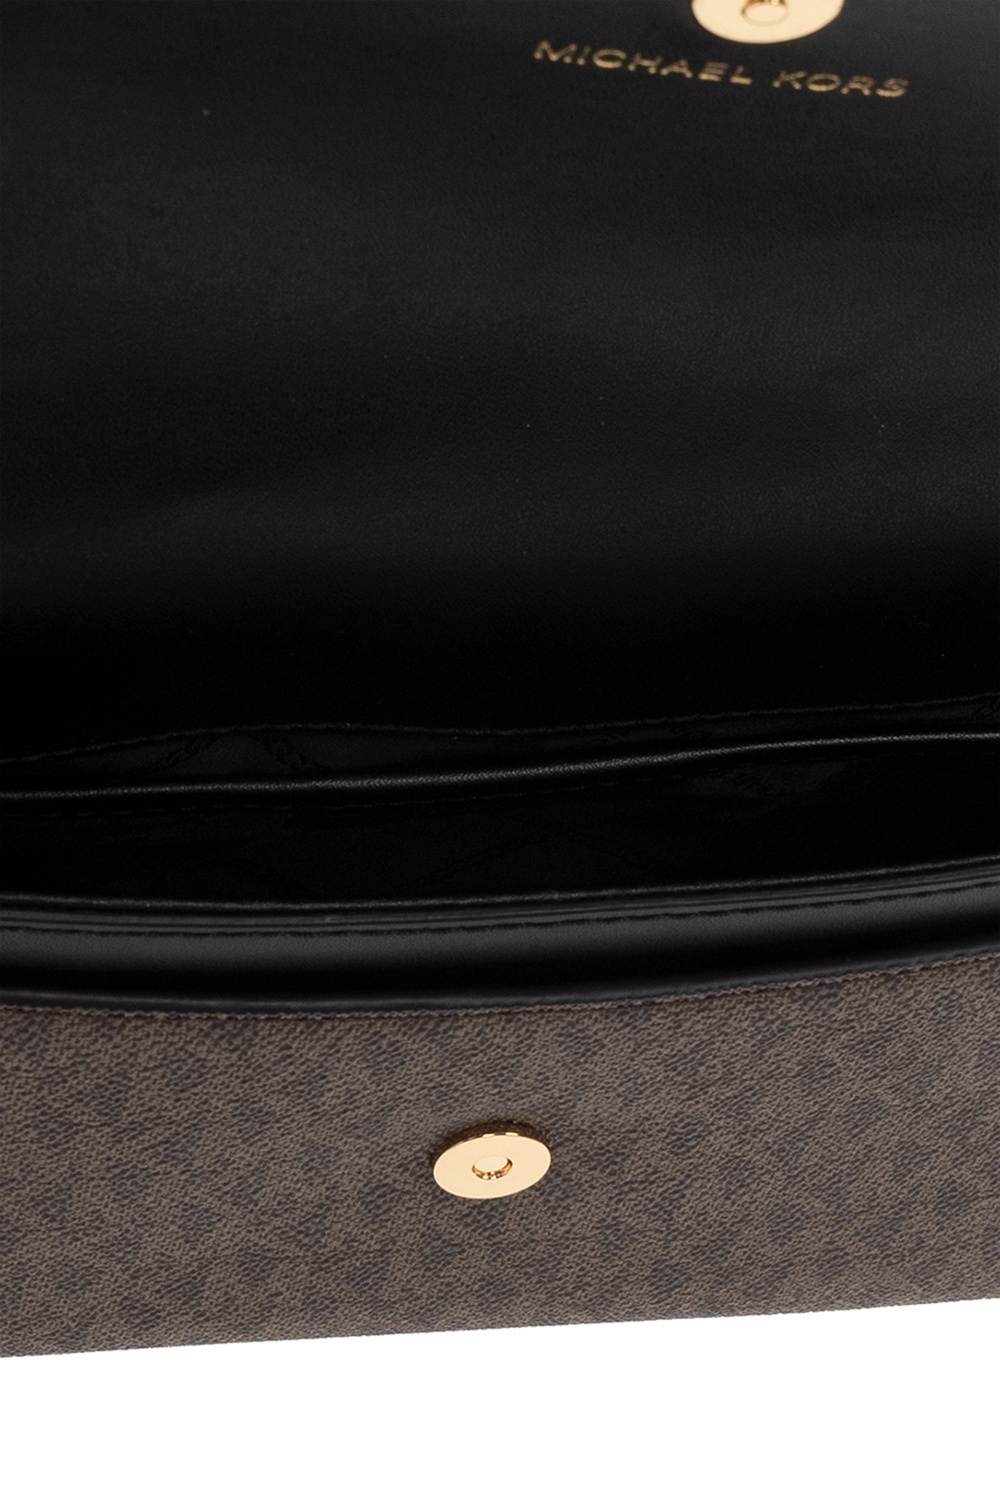 Michael Kors Handbag Brooklyn Medium Convertible Flap Black (001)